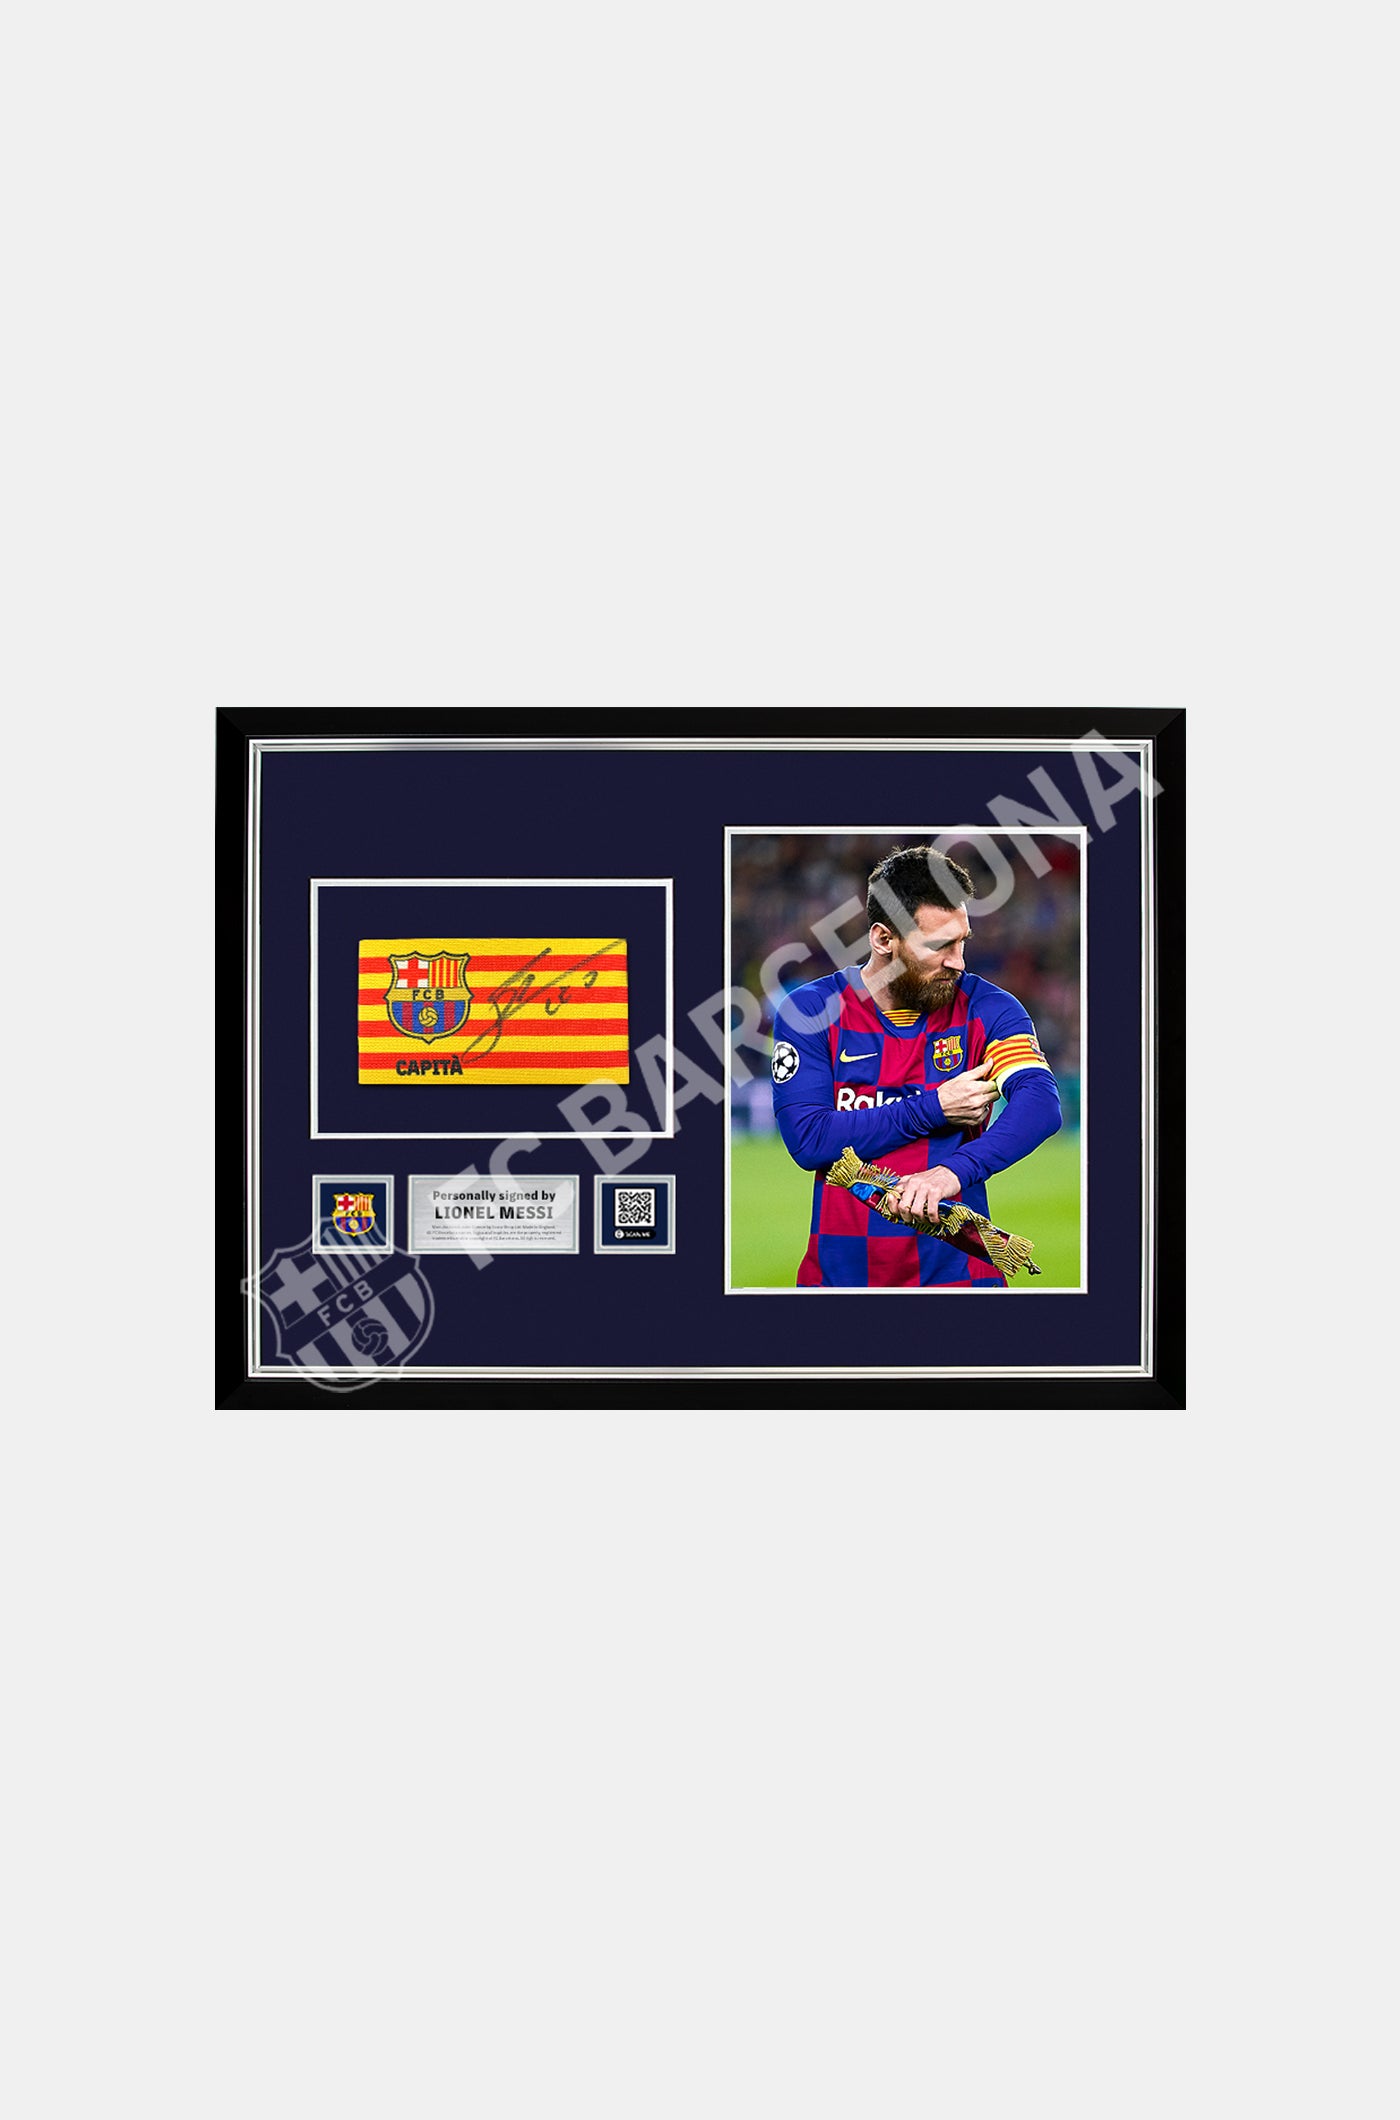 MESSI | Braçalet de capità del FC Barcelona signat per Lionel Messi i enmarcat